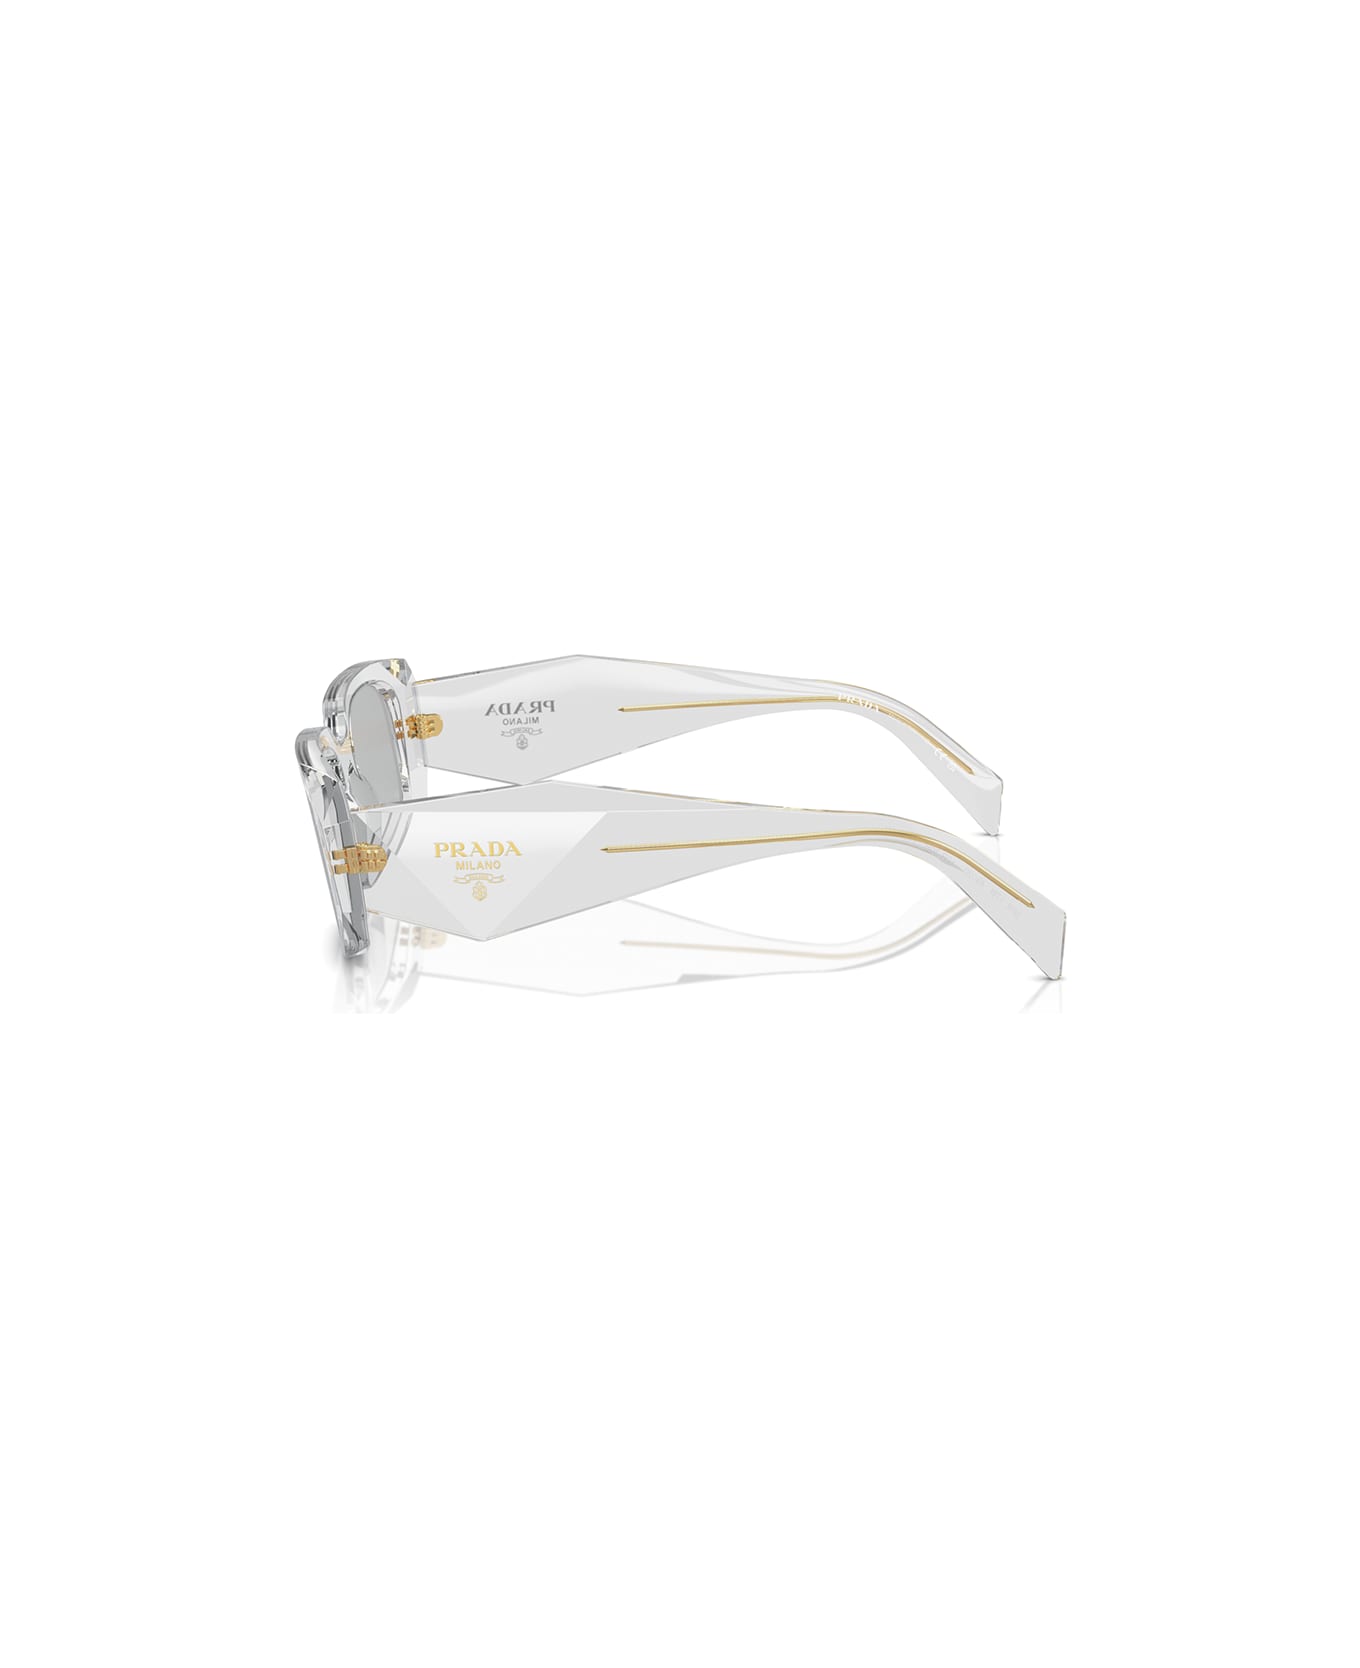 Prada Eyewear Sunglasses - Trasparente/Grigio chiaro